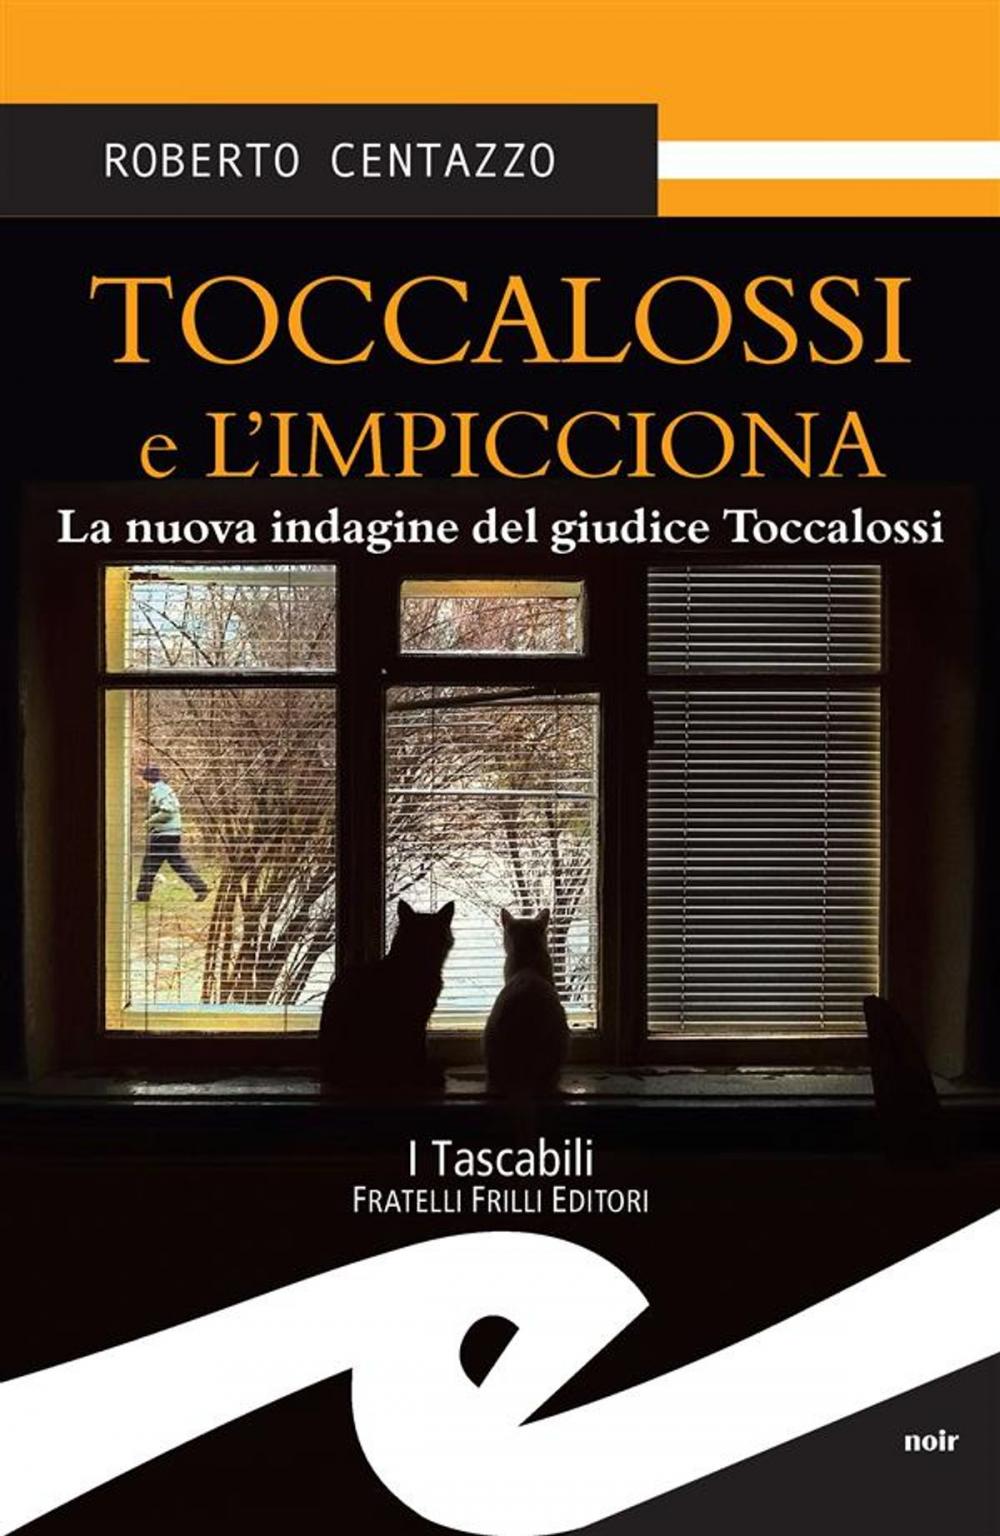 Big bigCover of Toccalossi e l'impicciona